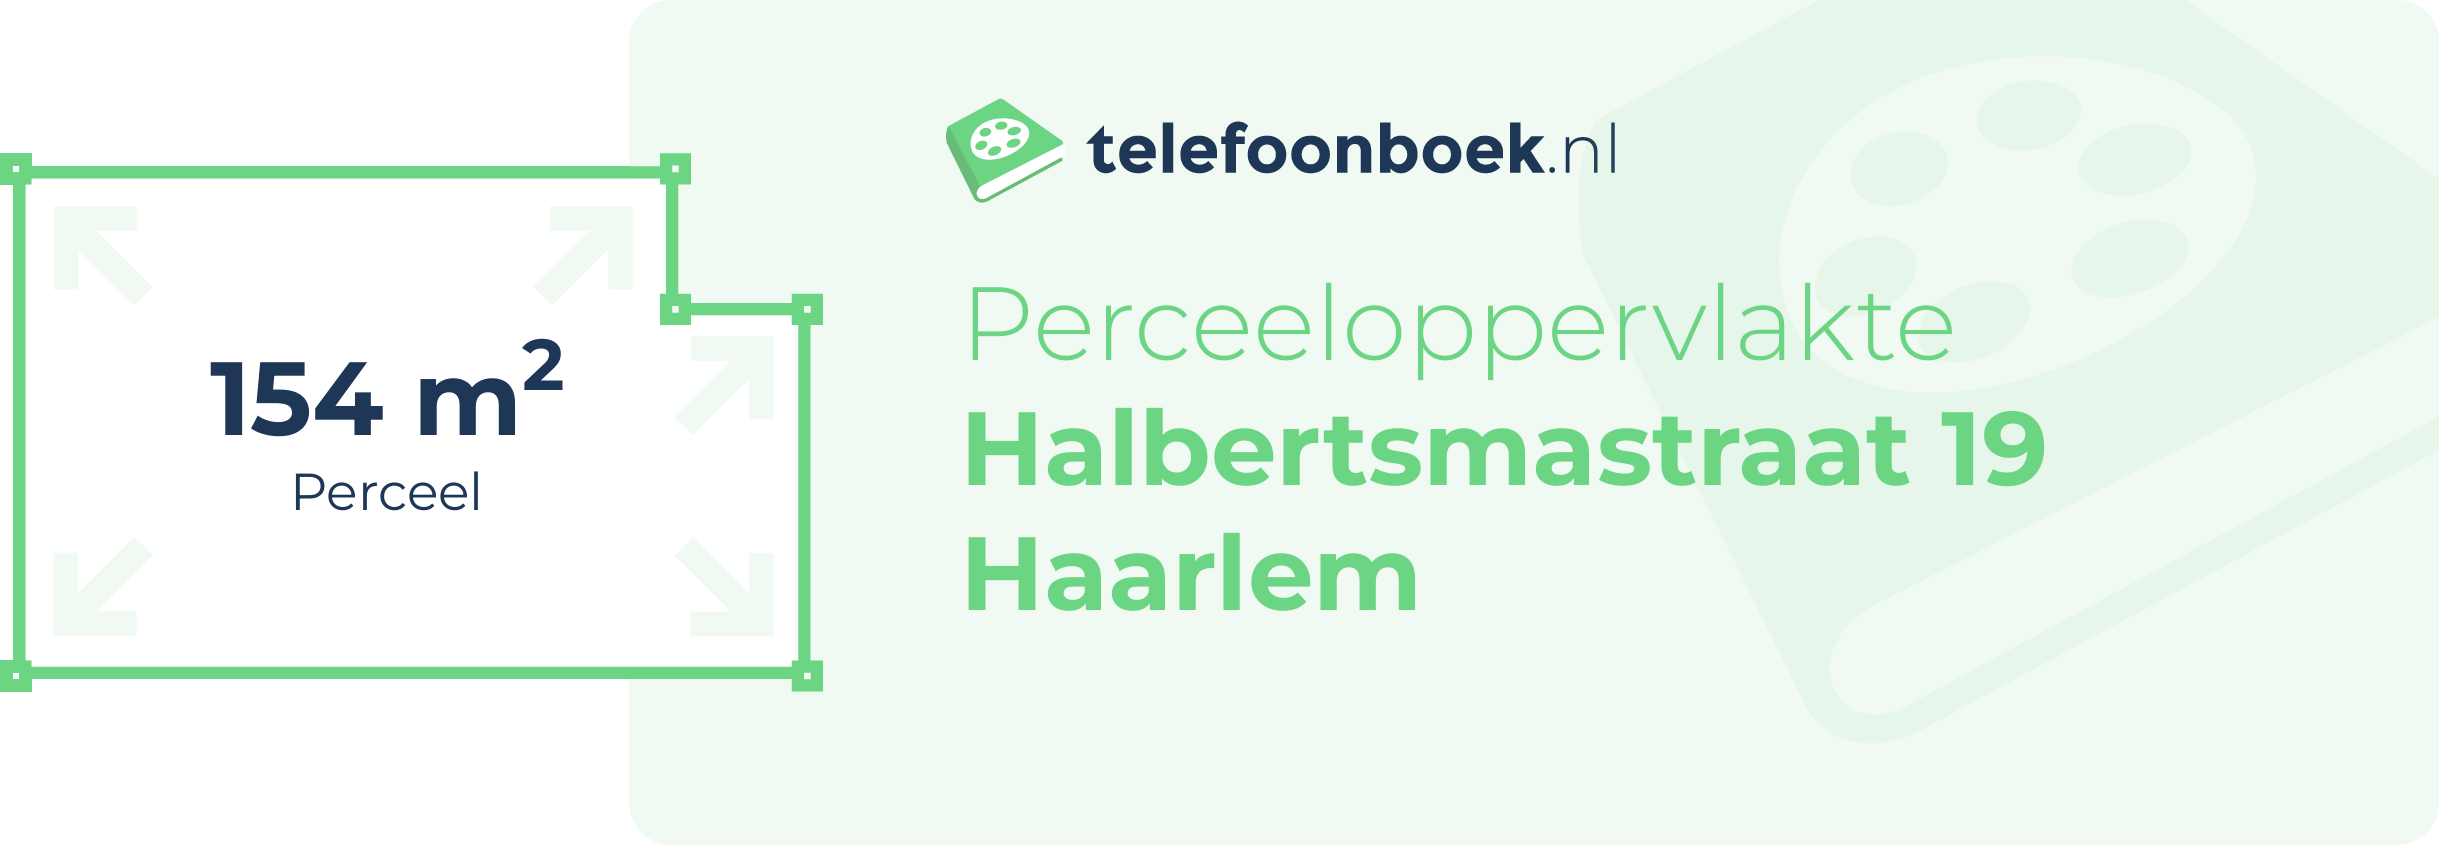 Perceeloppervlakte Halbertsmastraat 19 Haarlem